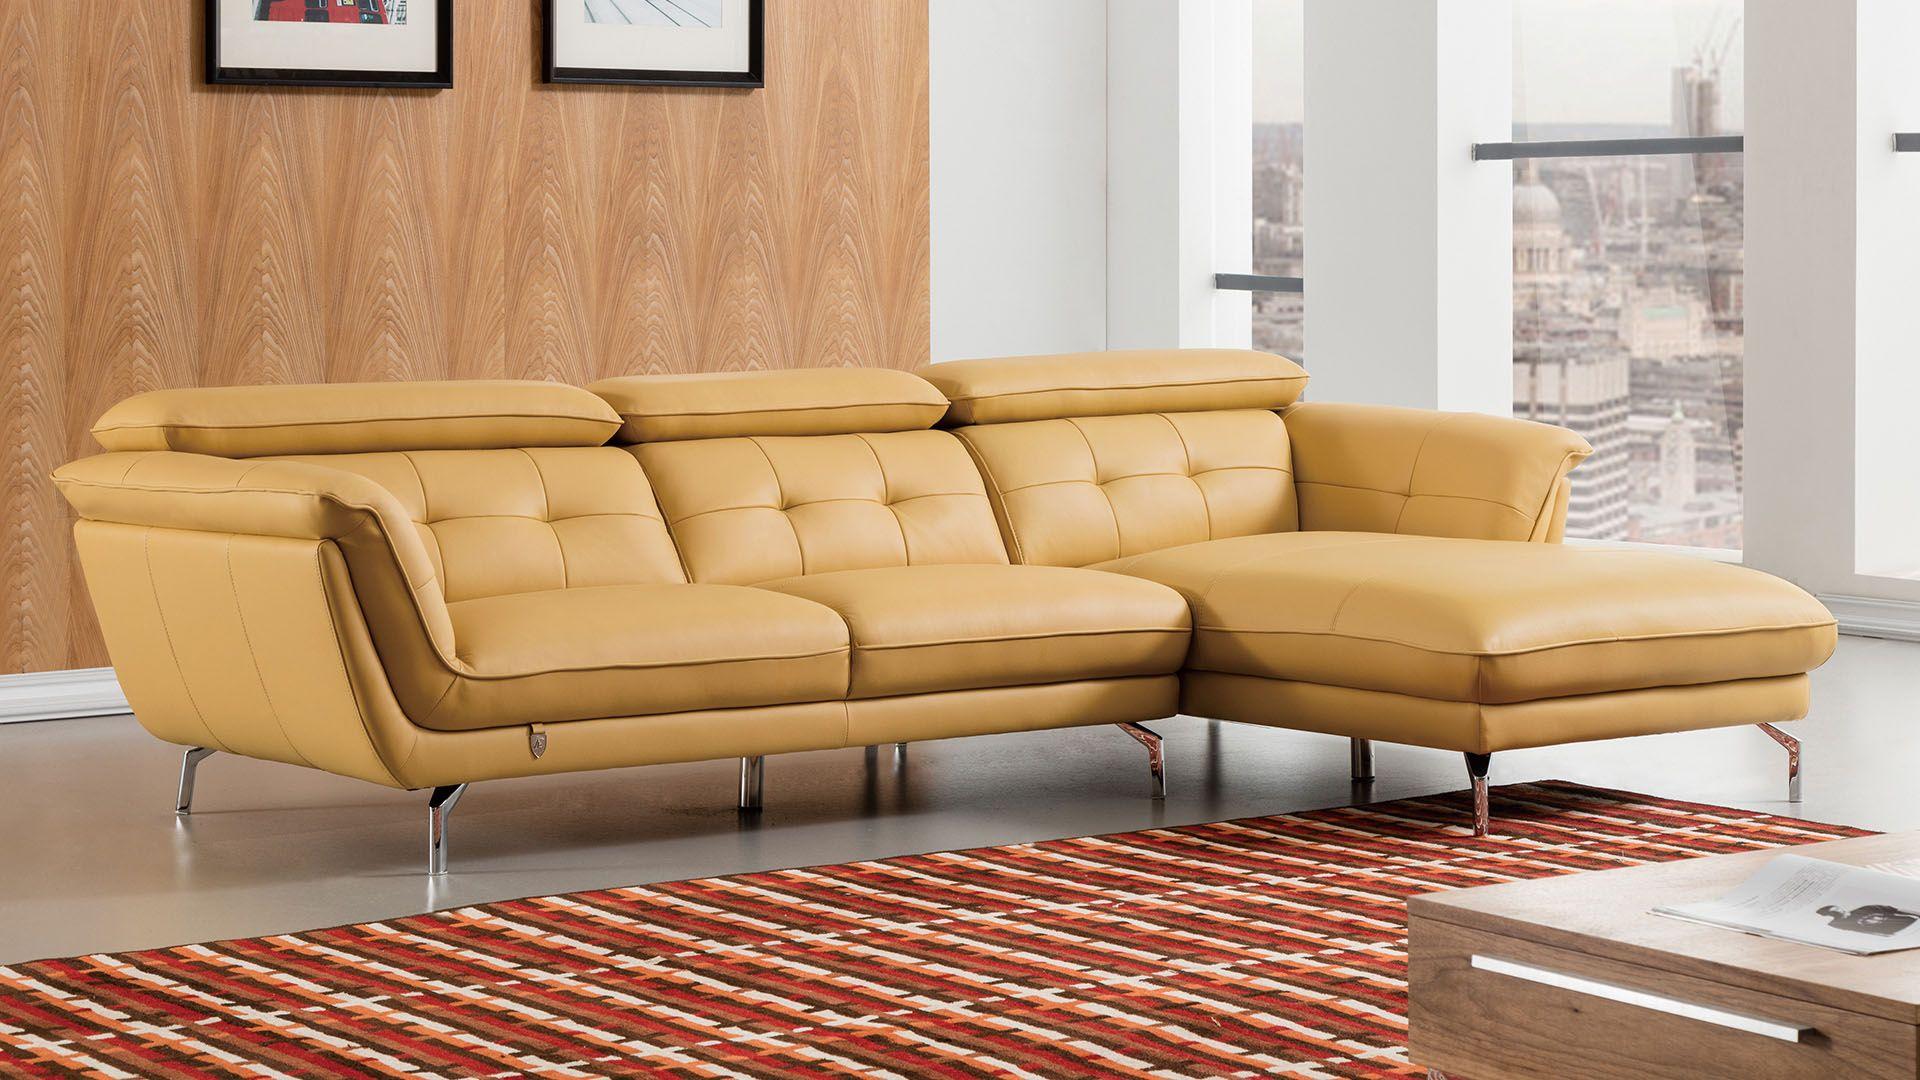 Contemporary, Modern Sectional Sofa EK-L083-YO EK-L083-YO in Yellow Leather